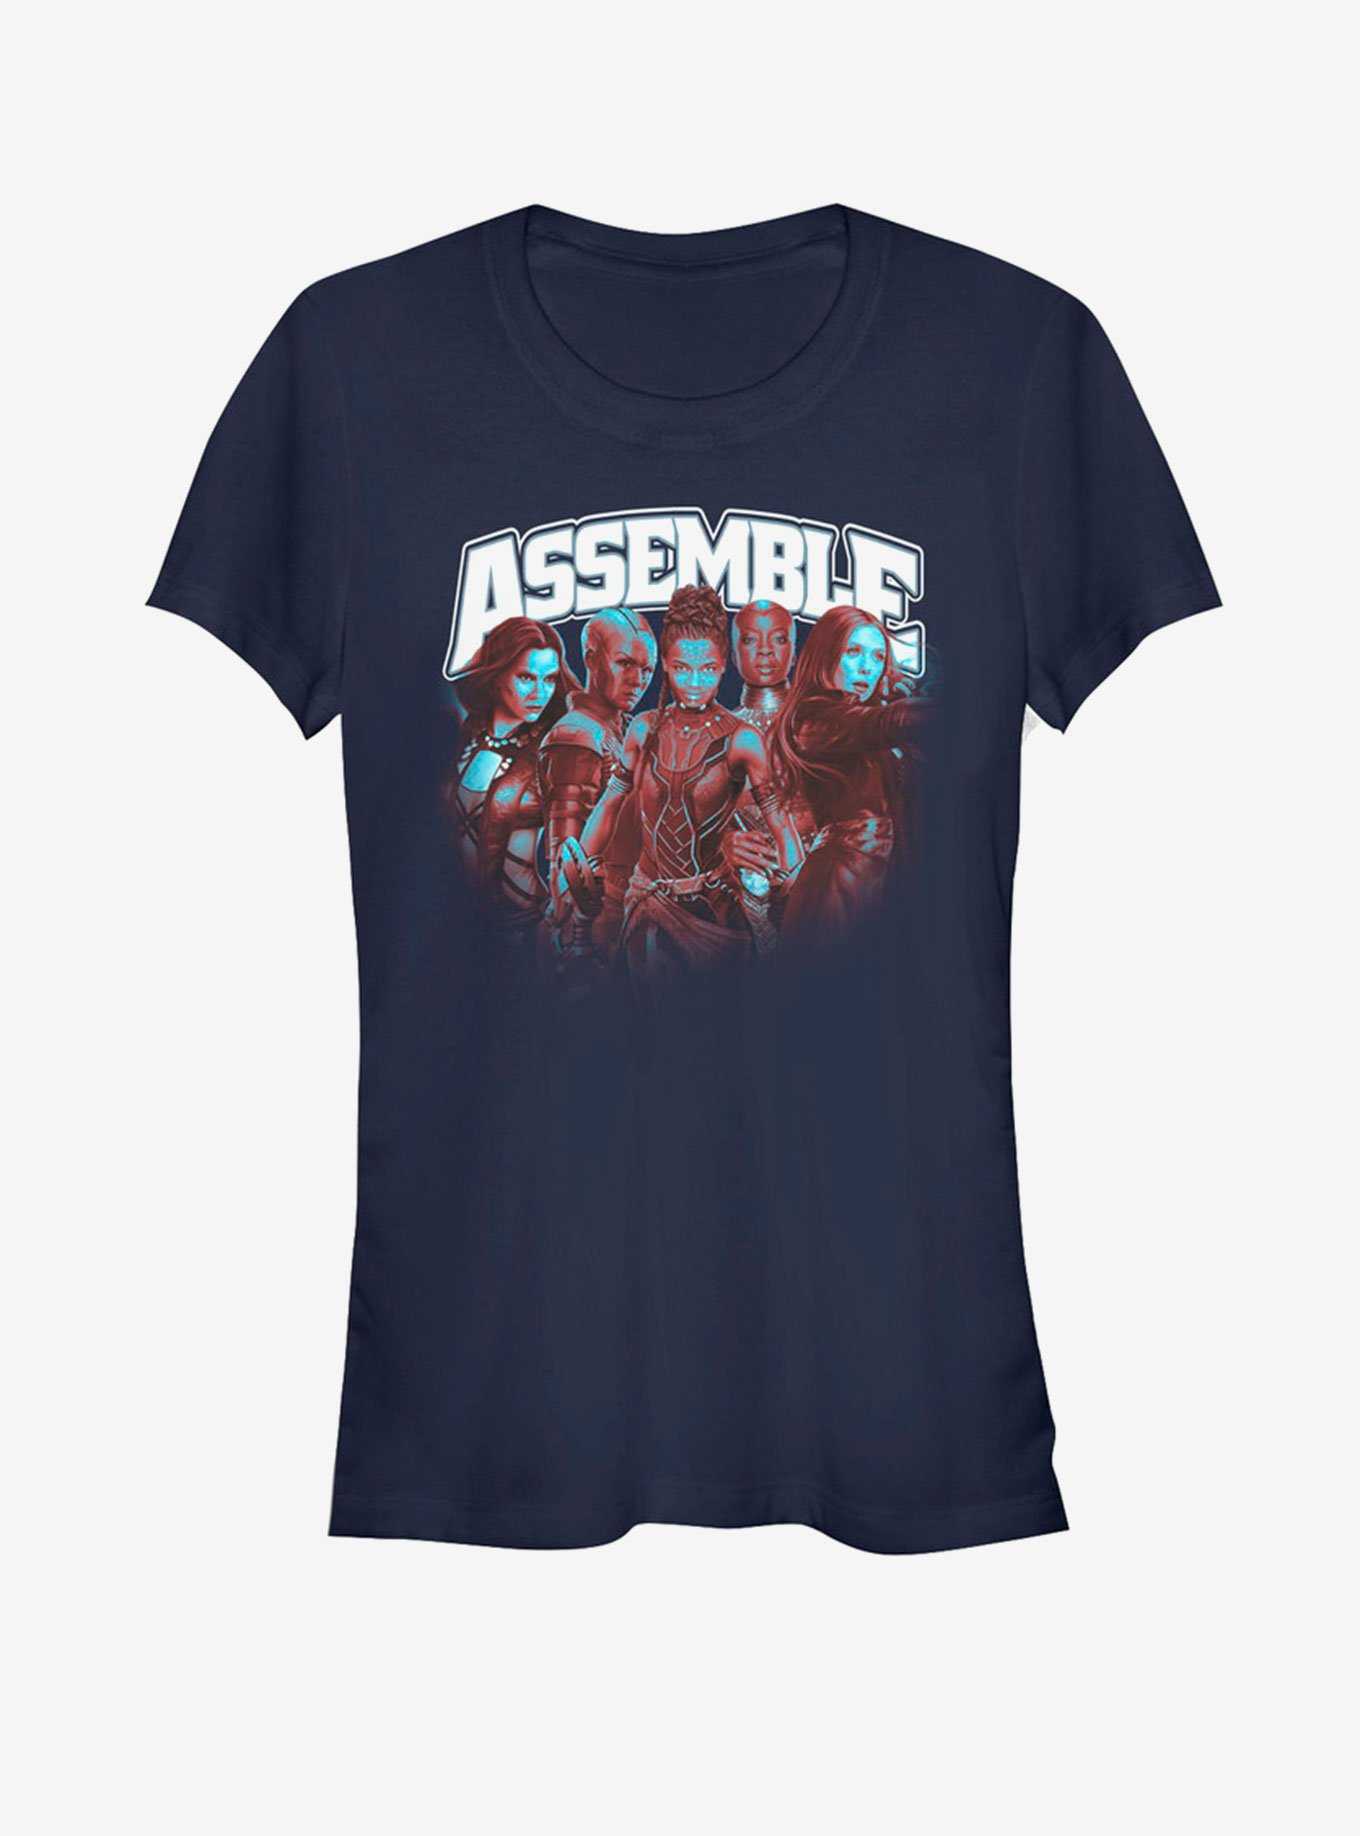 Marvel Avengers: Endgame Assemble The Heroes Girls T-Shirt, , hi-res